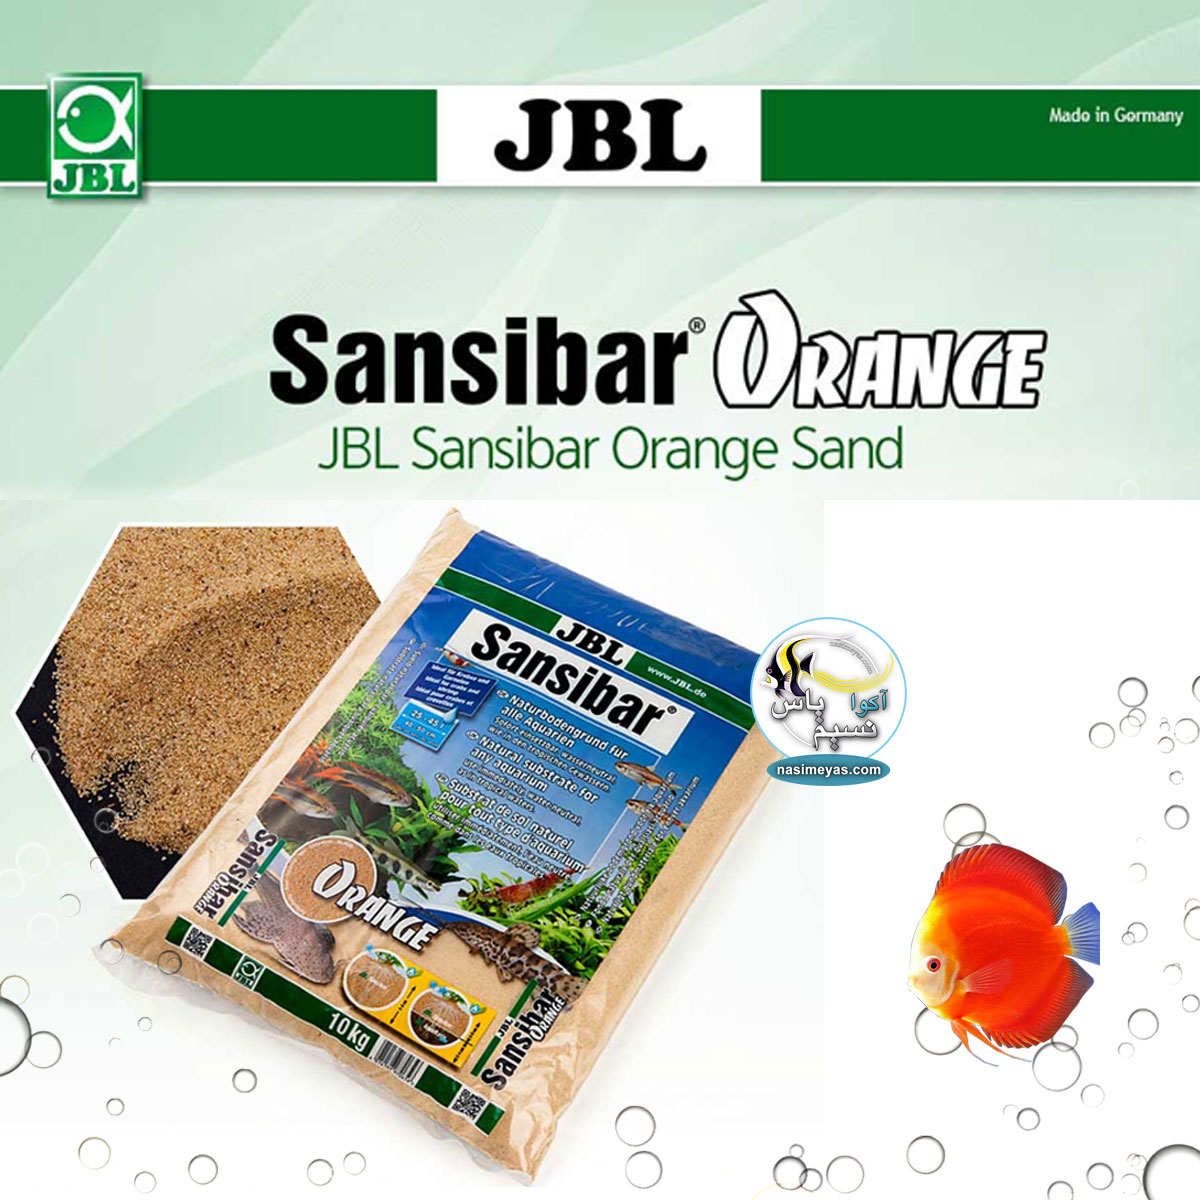 JBL Sansibar ORANGE